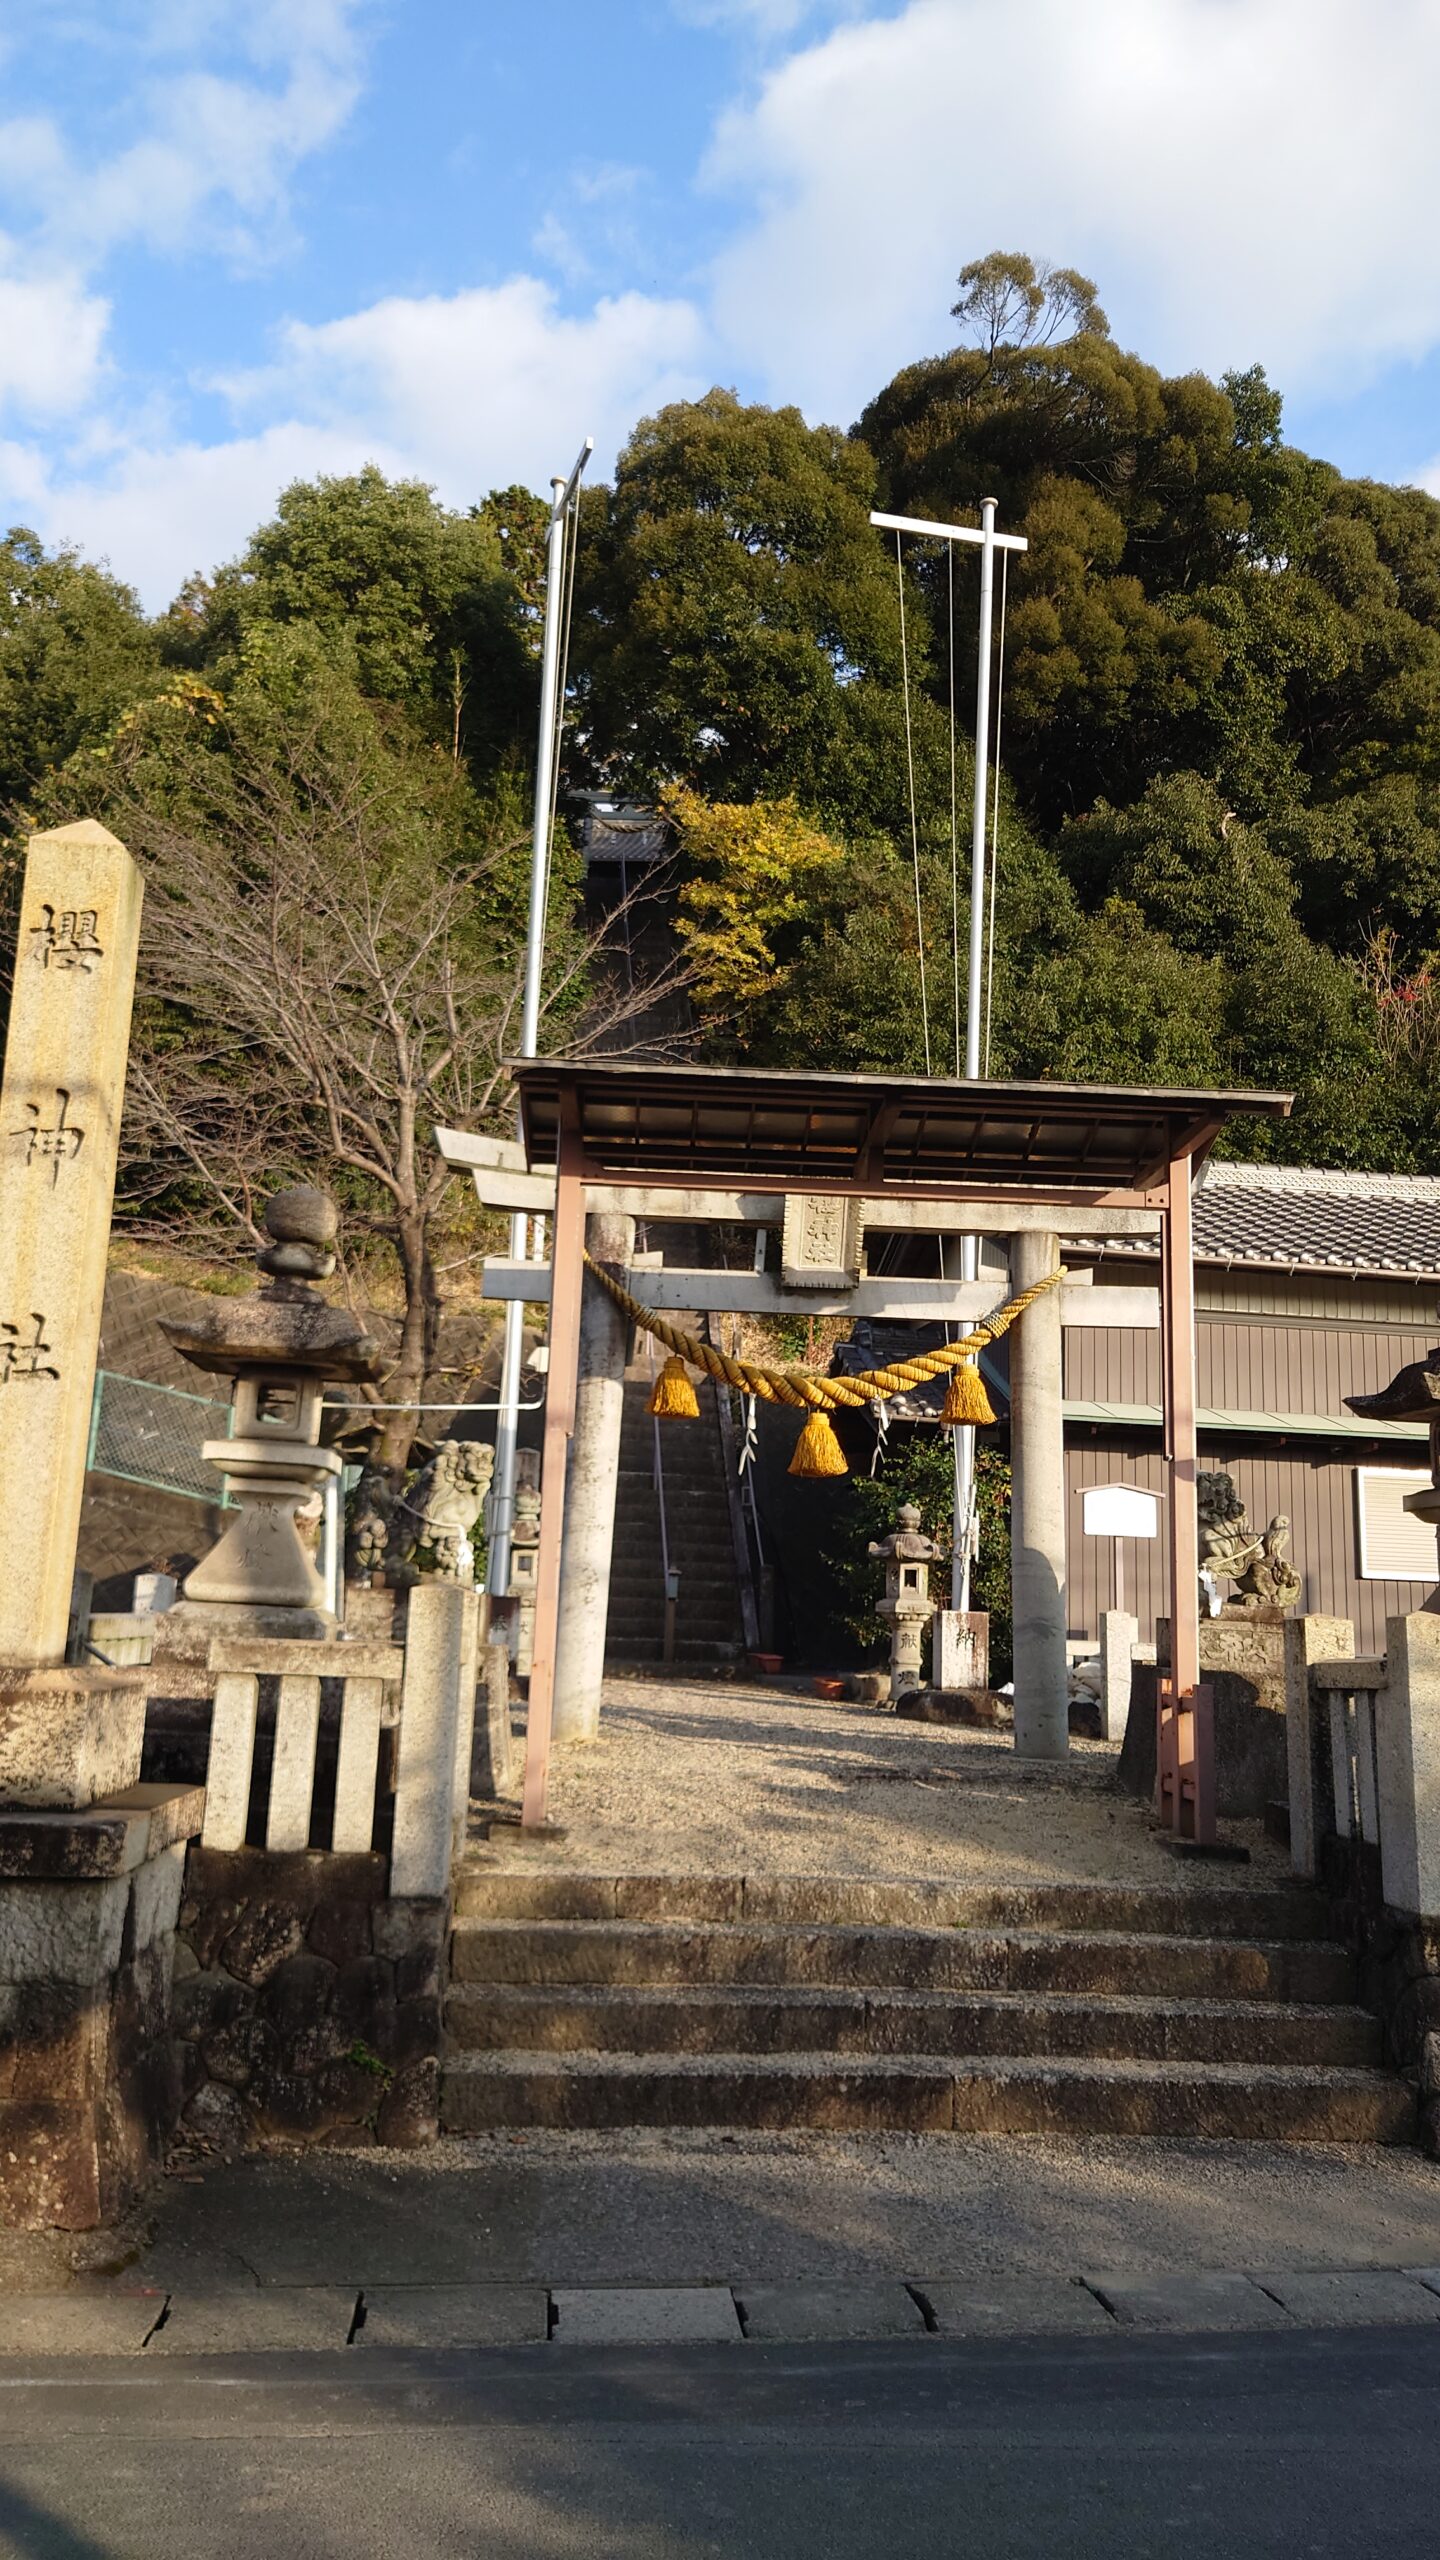 櫻神社にて新嘗祭が斉行されました。